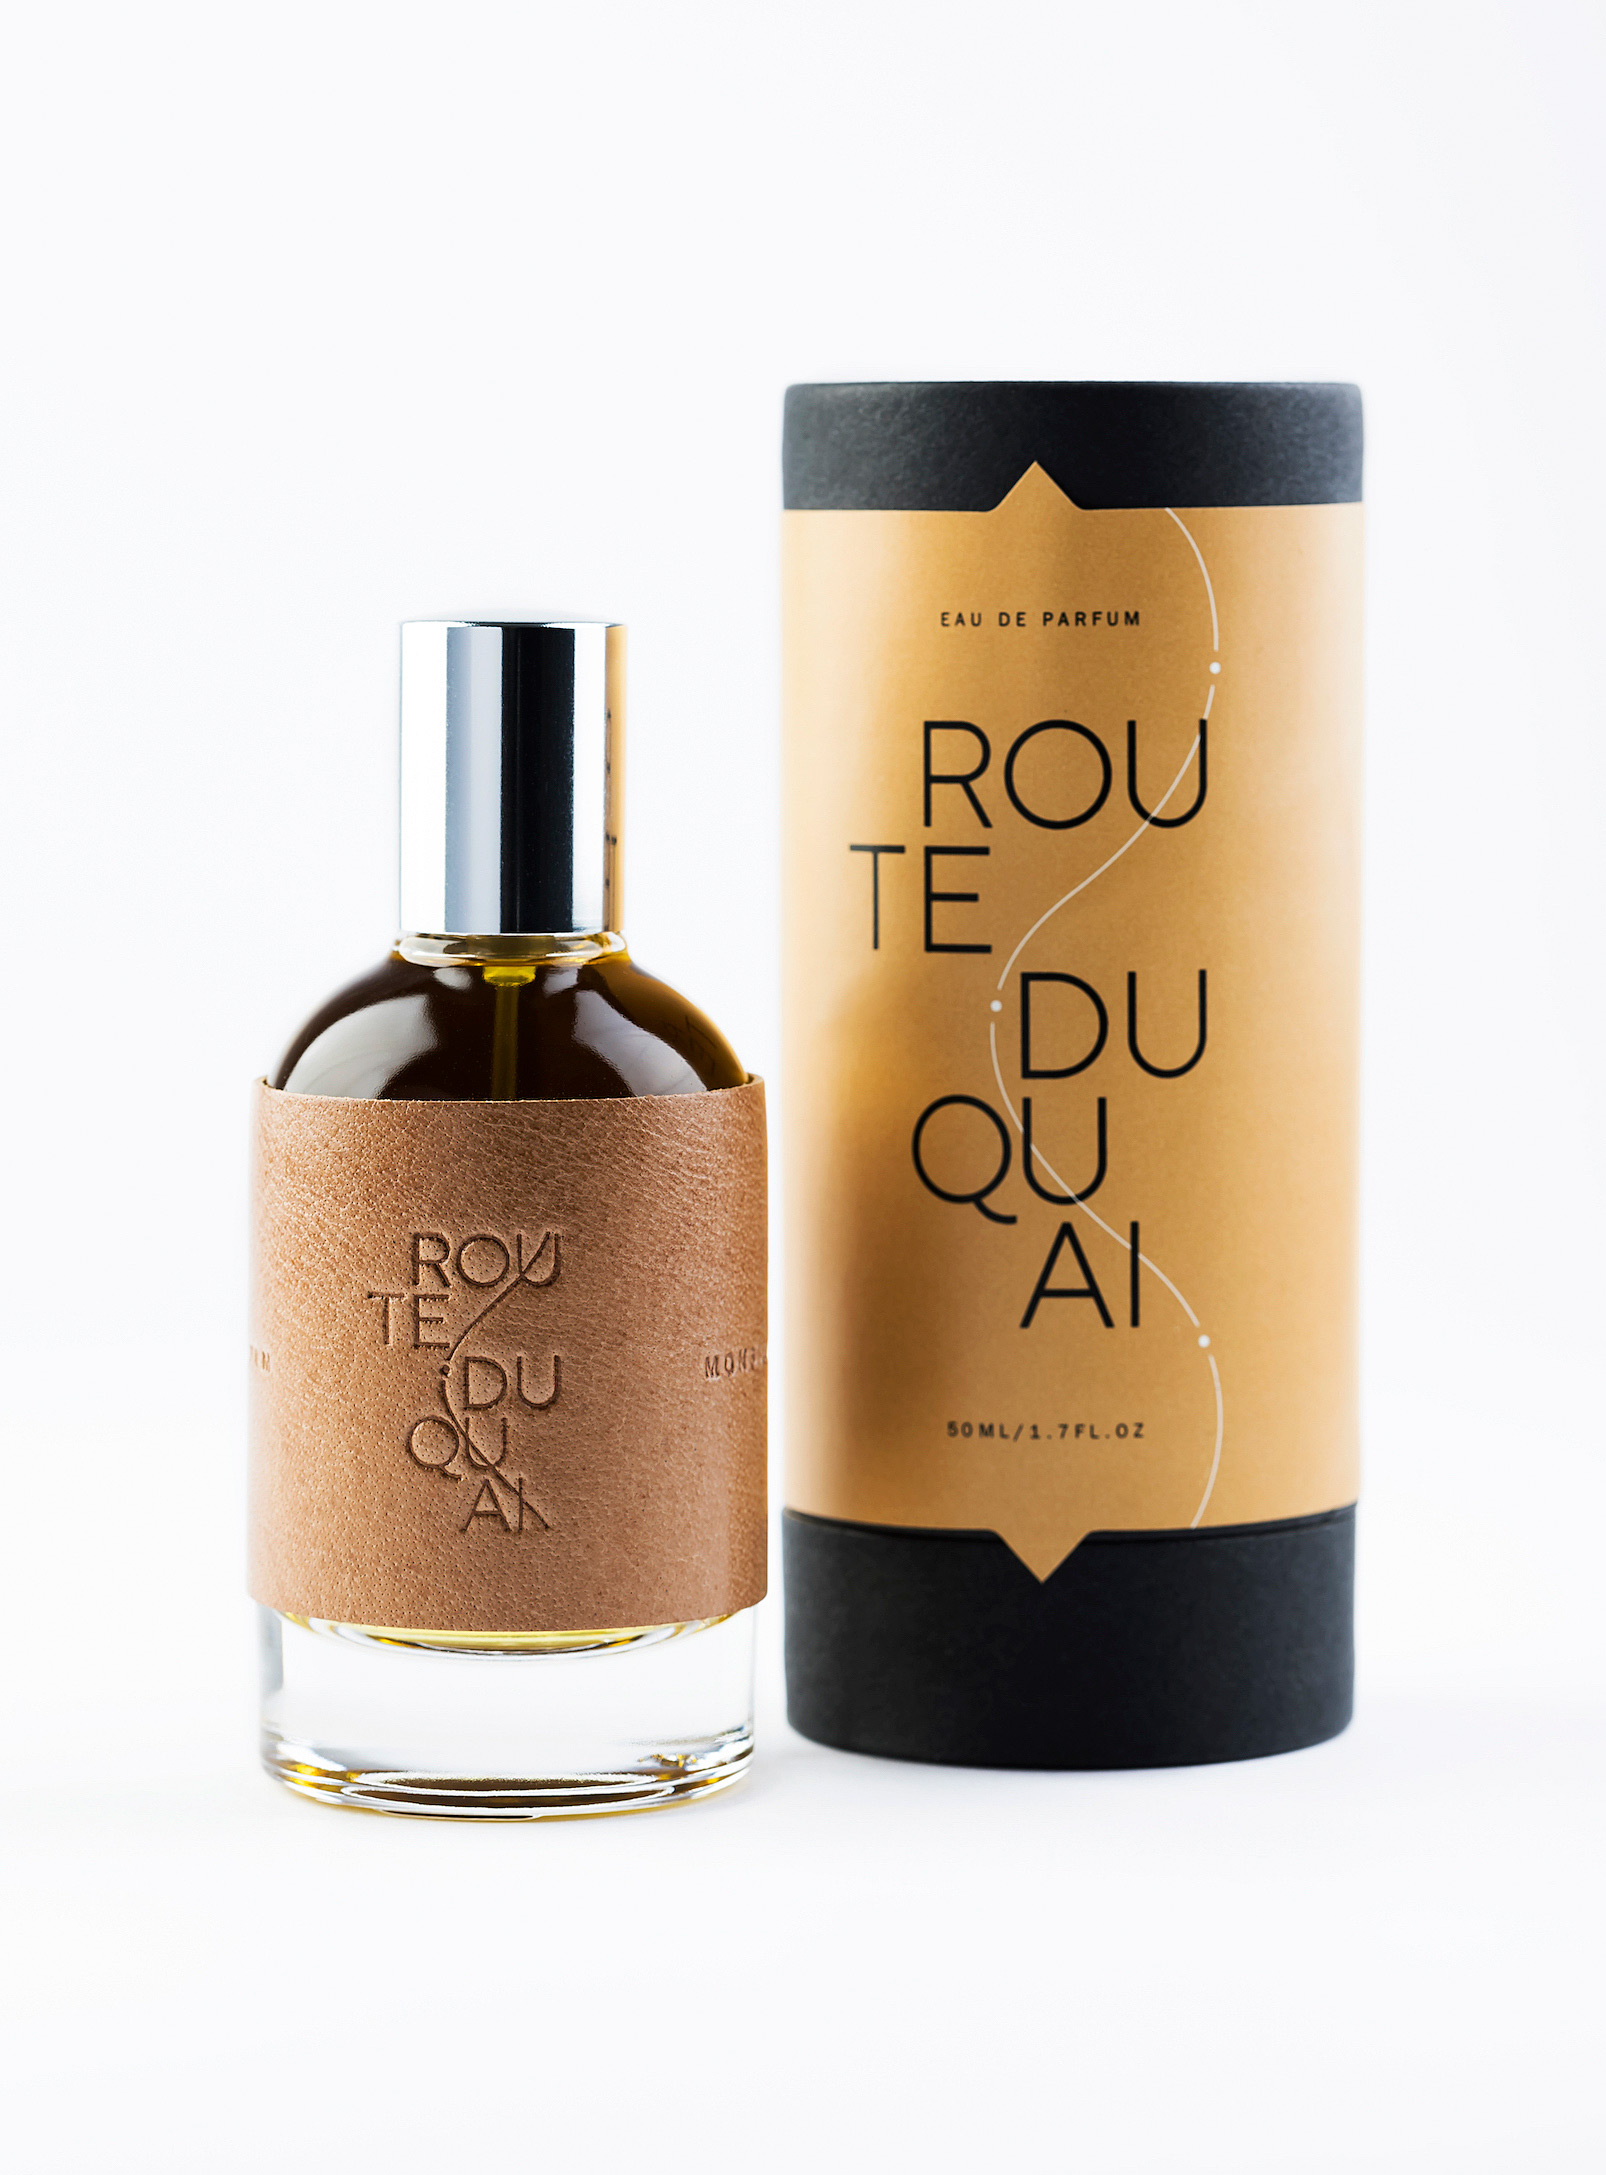 Monsillage - L'eau de parfum Route du quai Voir nos formats offerts